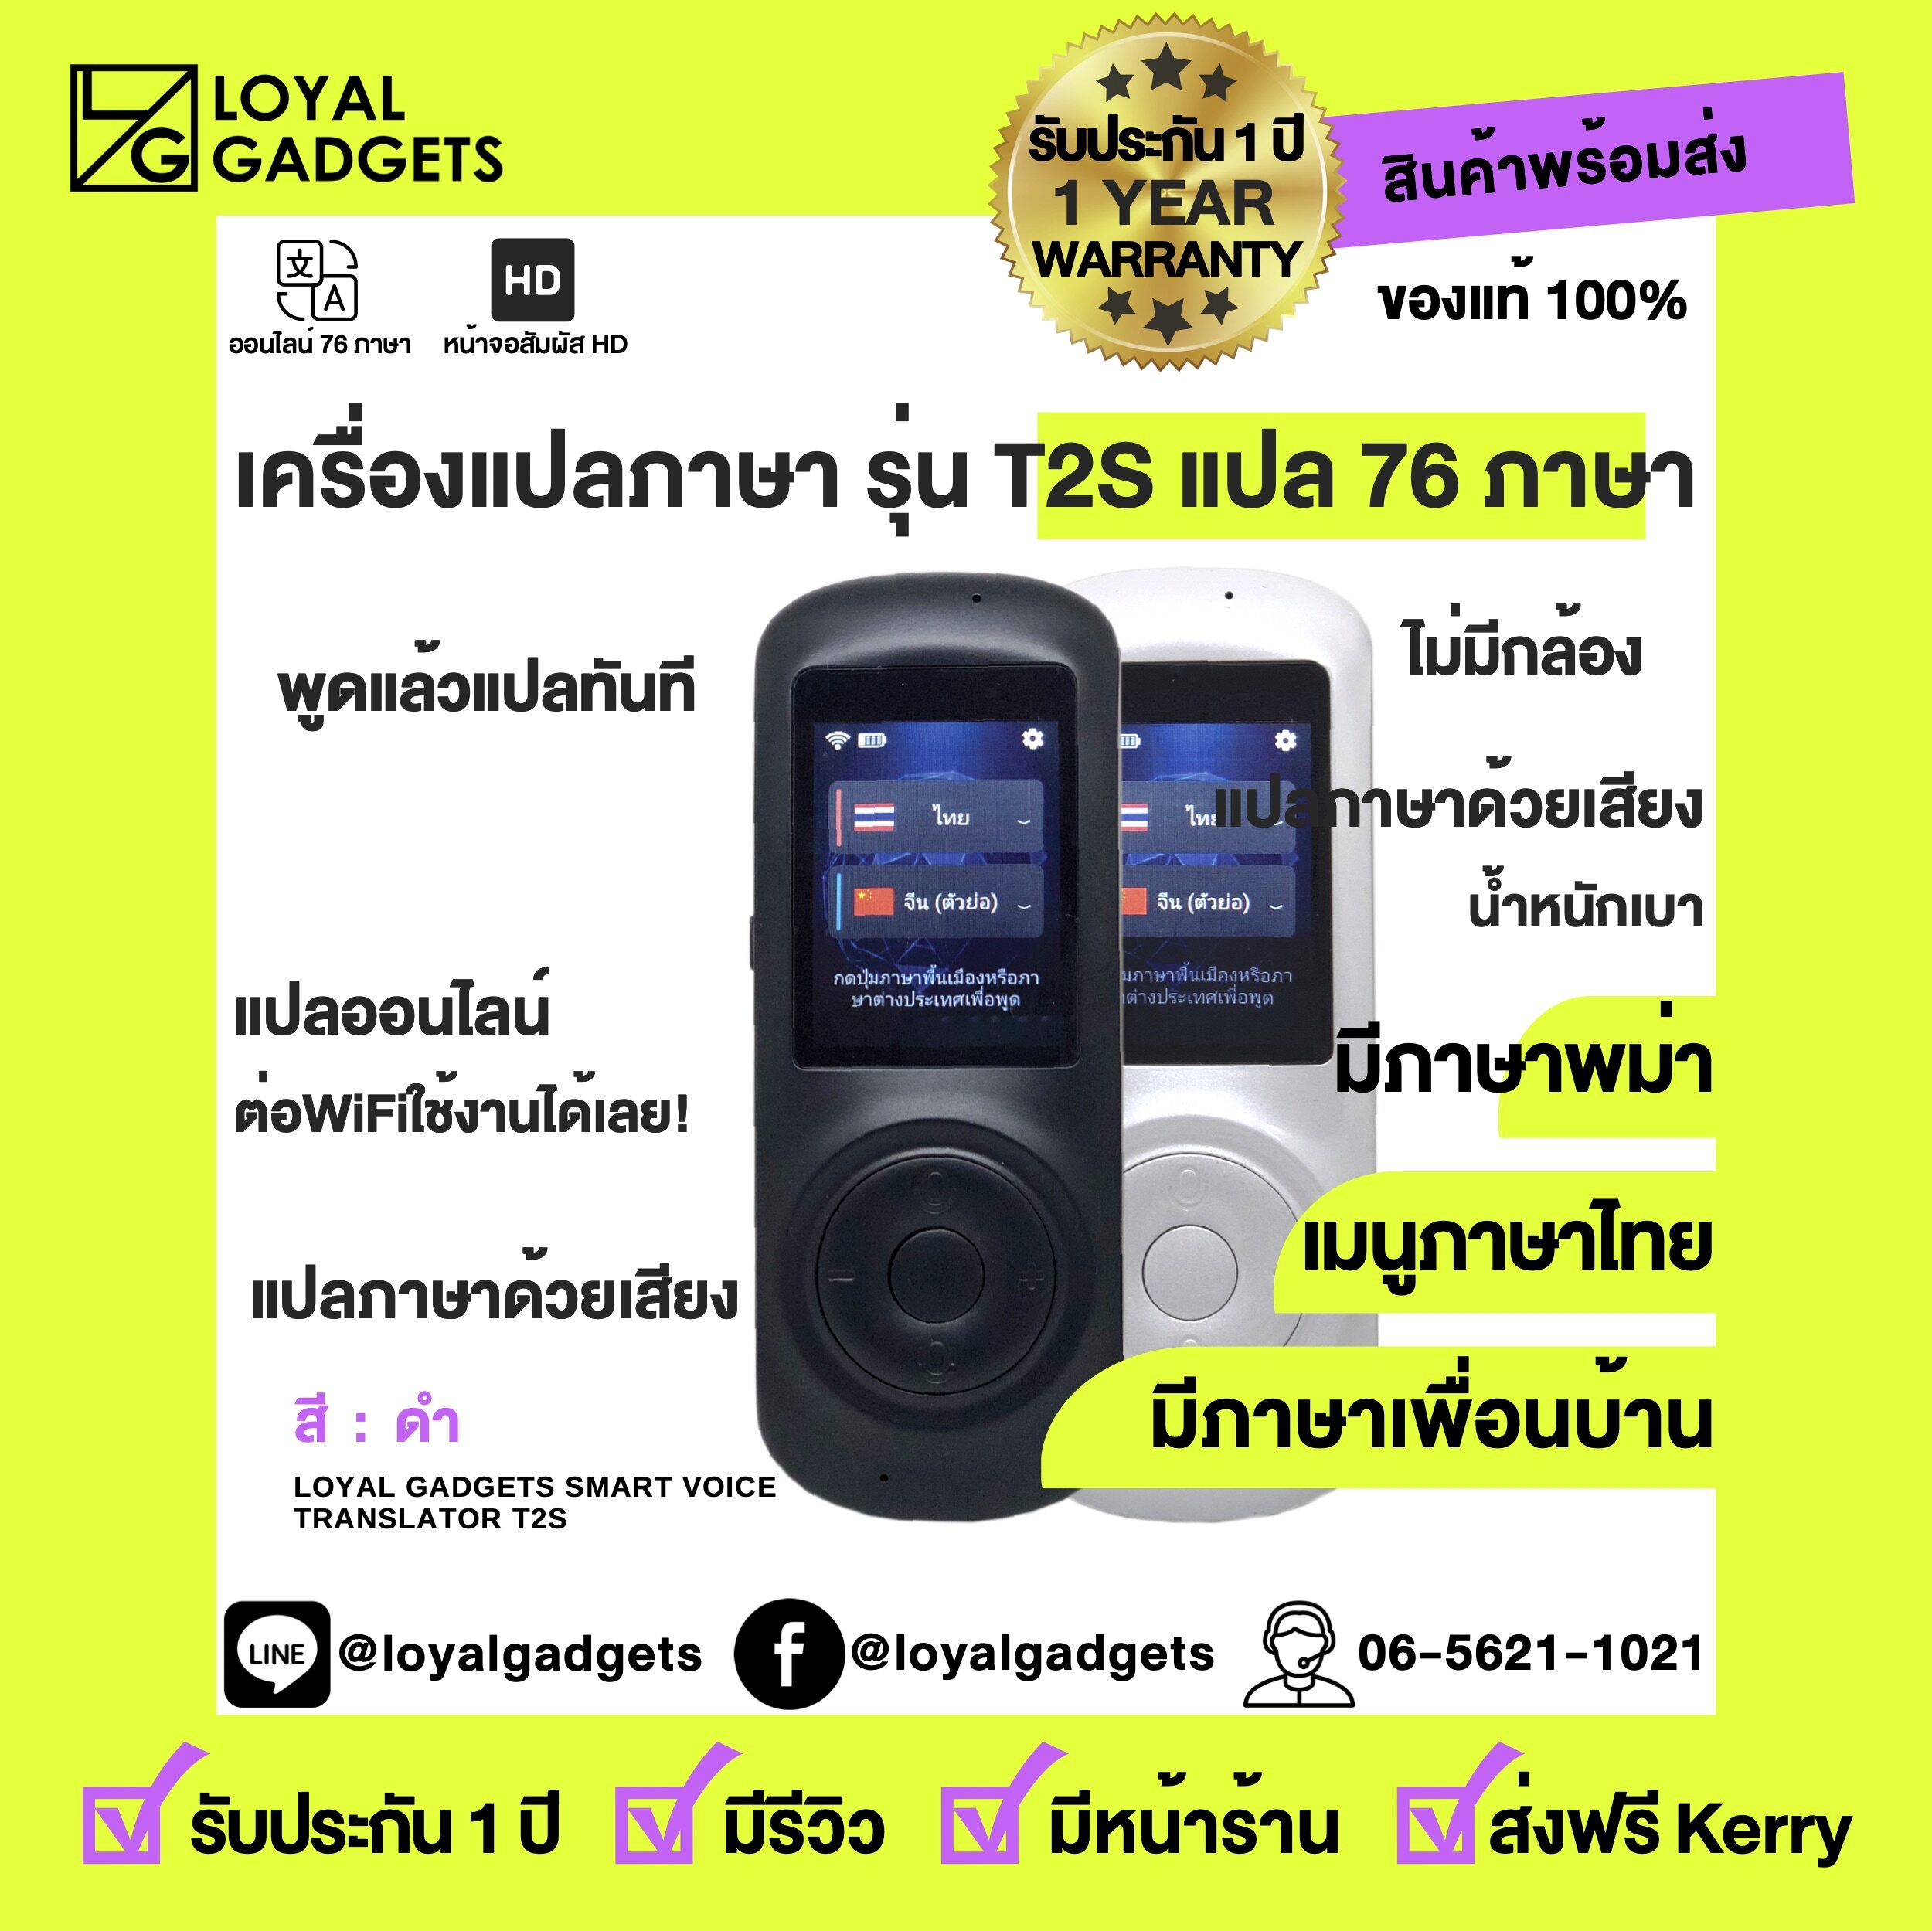 Voice Translator T2S เครื่องแปลภาษา 72 ภาษา ทั่วโลก พูดภาษาไทยแล้วแปลเป็นภาษาอื่นได้ทันที ขนาดพกพา แปลได้ 2 ทาง